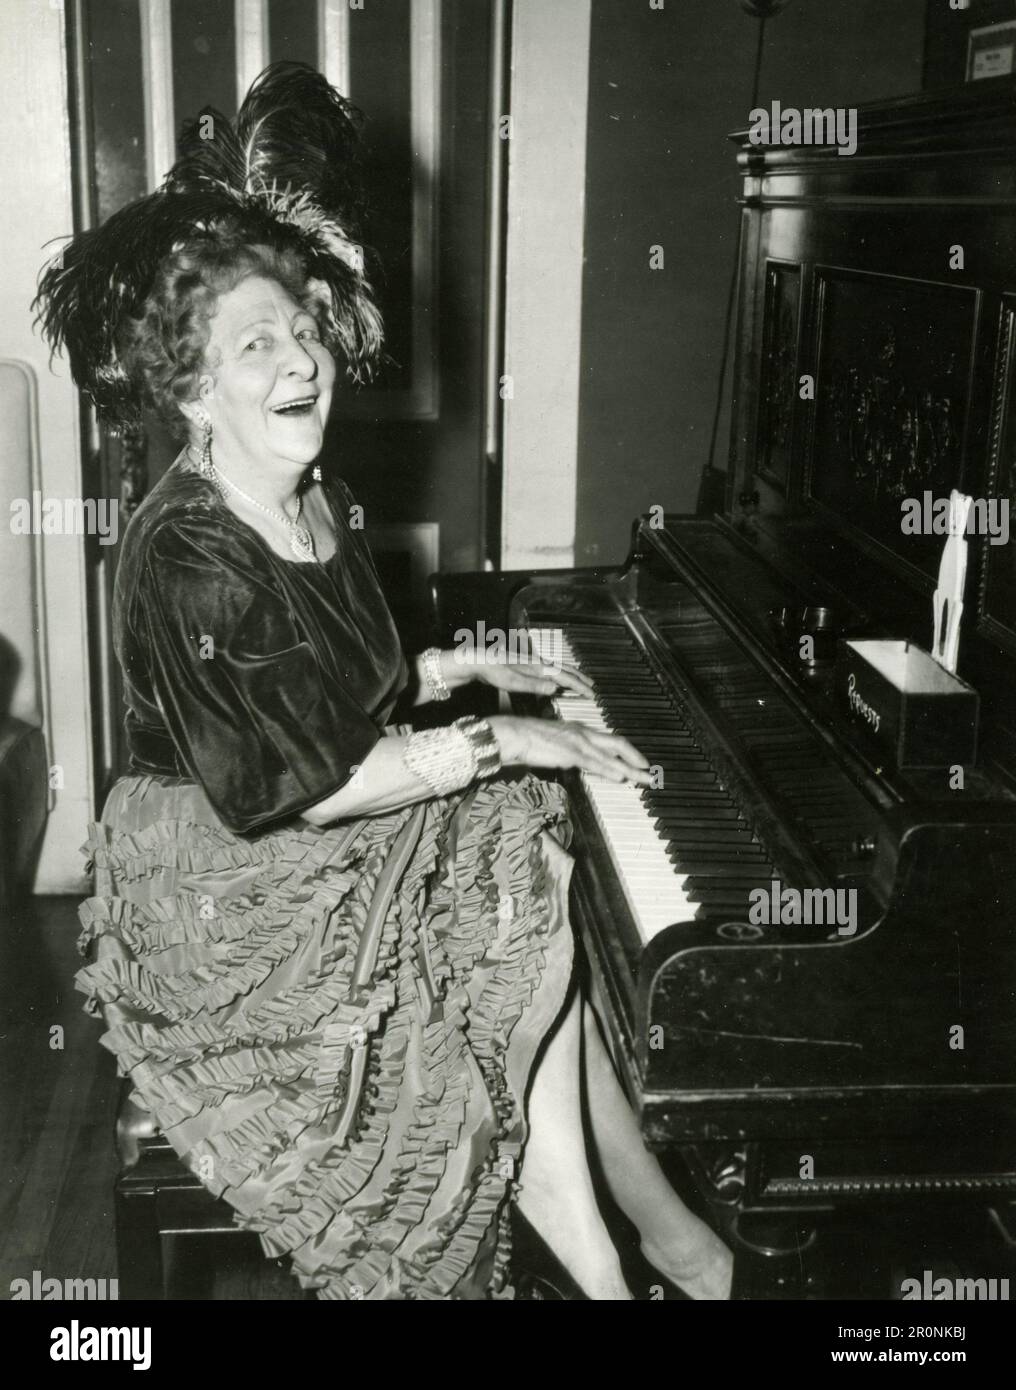 Femme mature jouant du piano, 1960s Banque D'Images